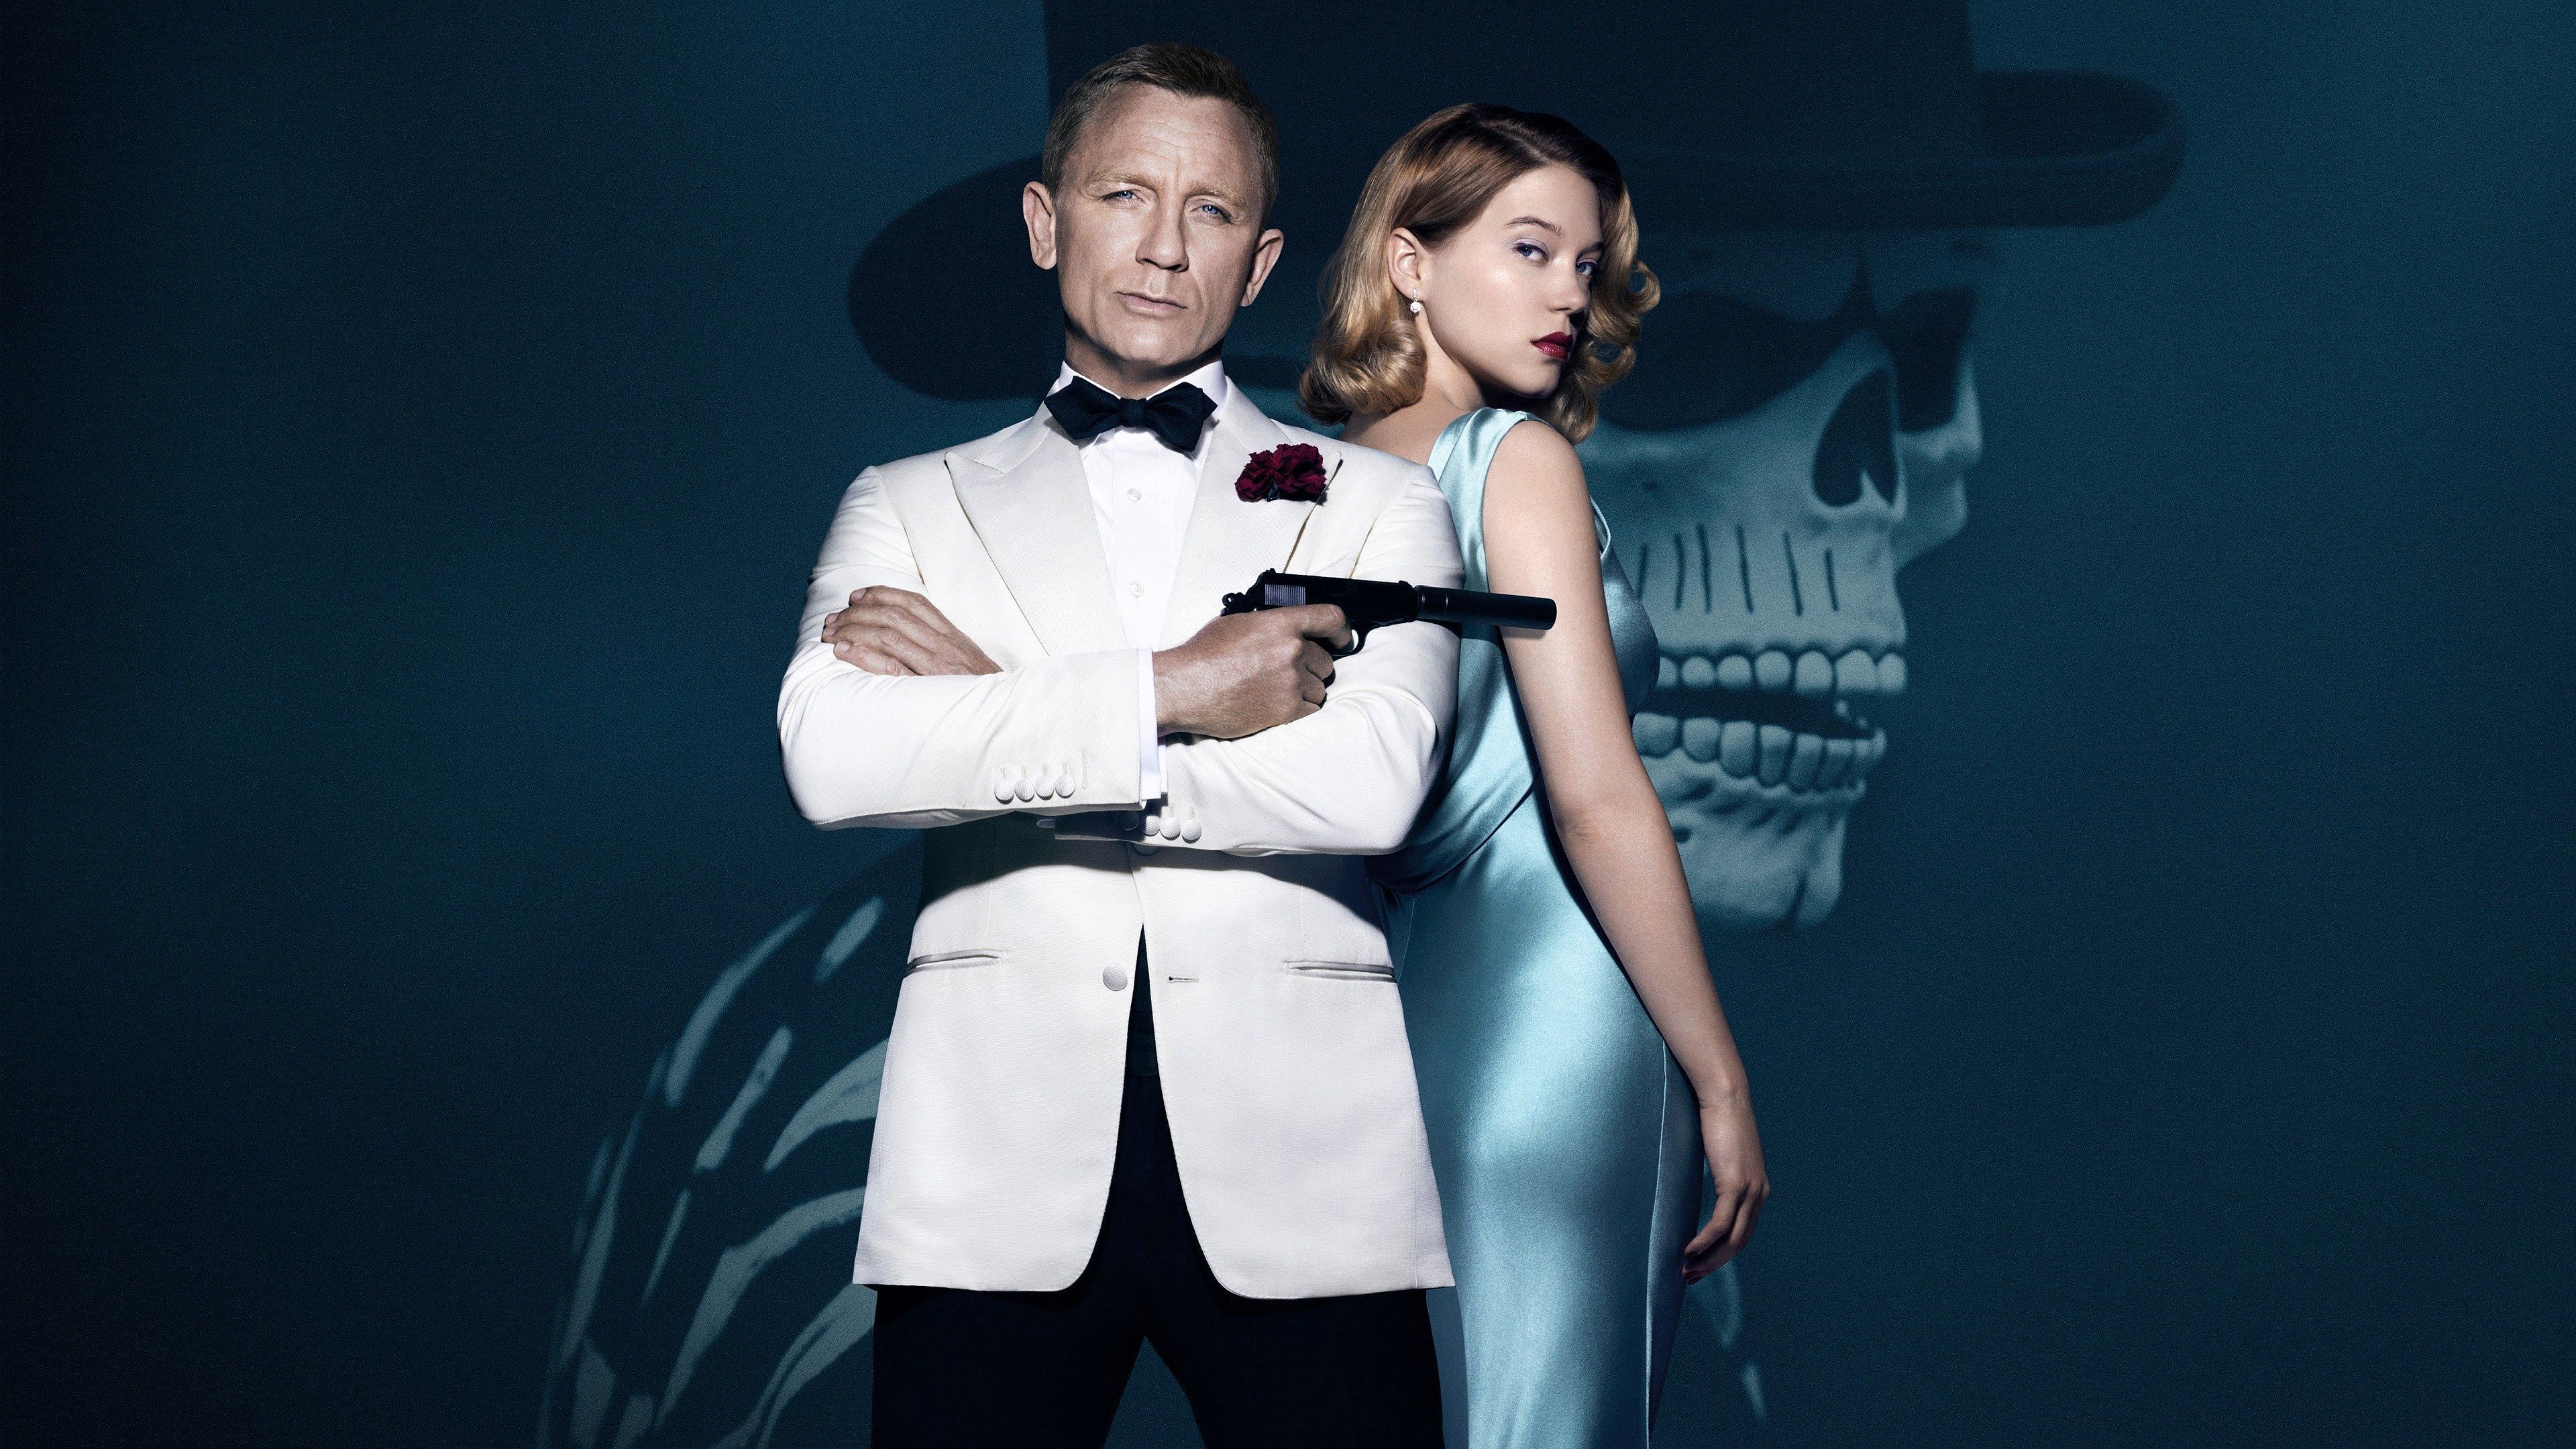 James Bond L A Seydoux And Madeleine Swann 4k Ultra HD Wallpaper